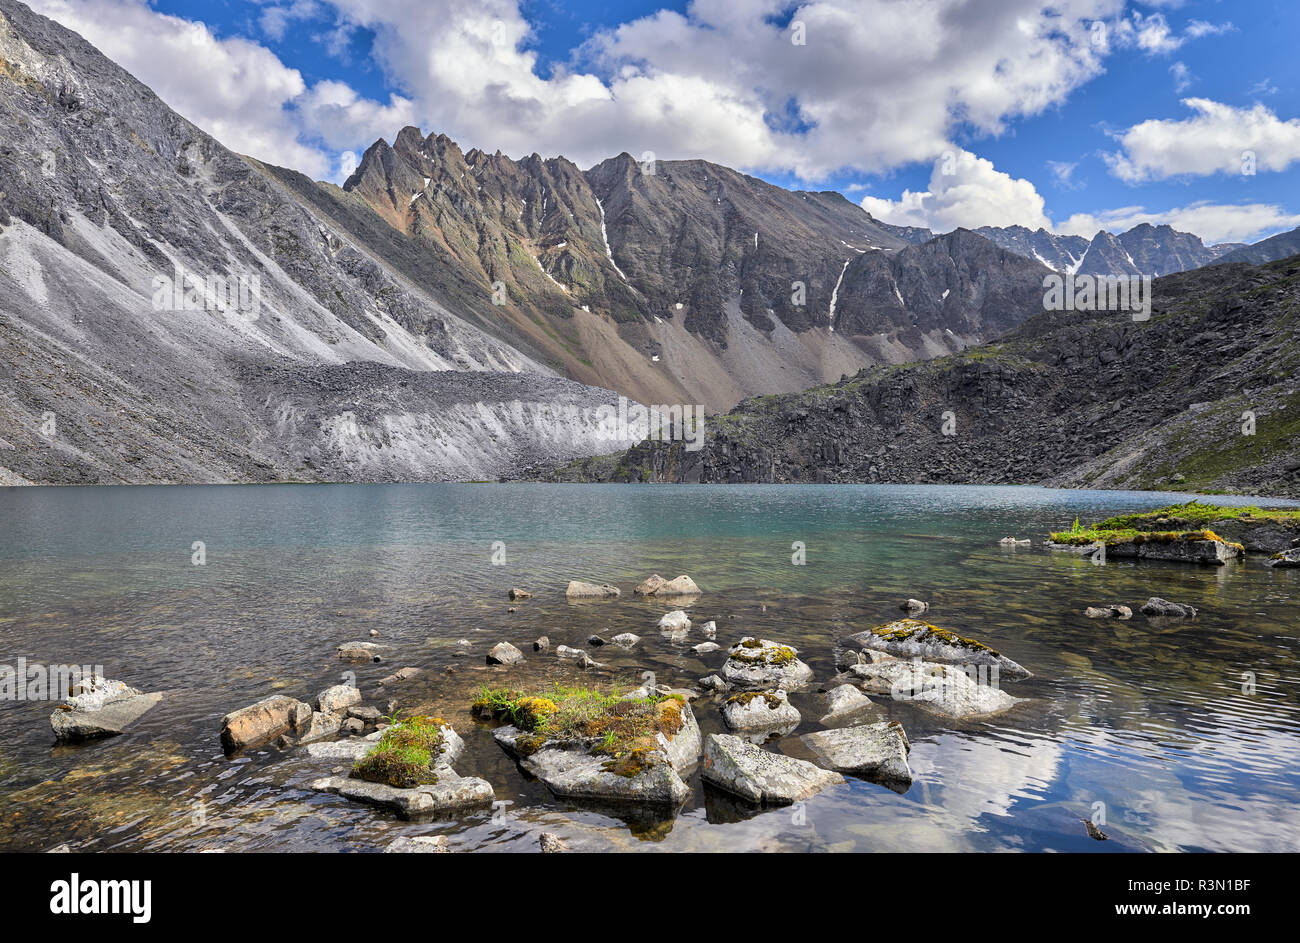 Fragments de roches couvertes d'herbe et de mousse dans l'eau du lac de montagne. Paysage de l'eau dans les montagnes de la Sibérie orientale Banque D'Images